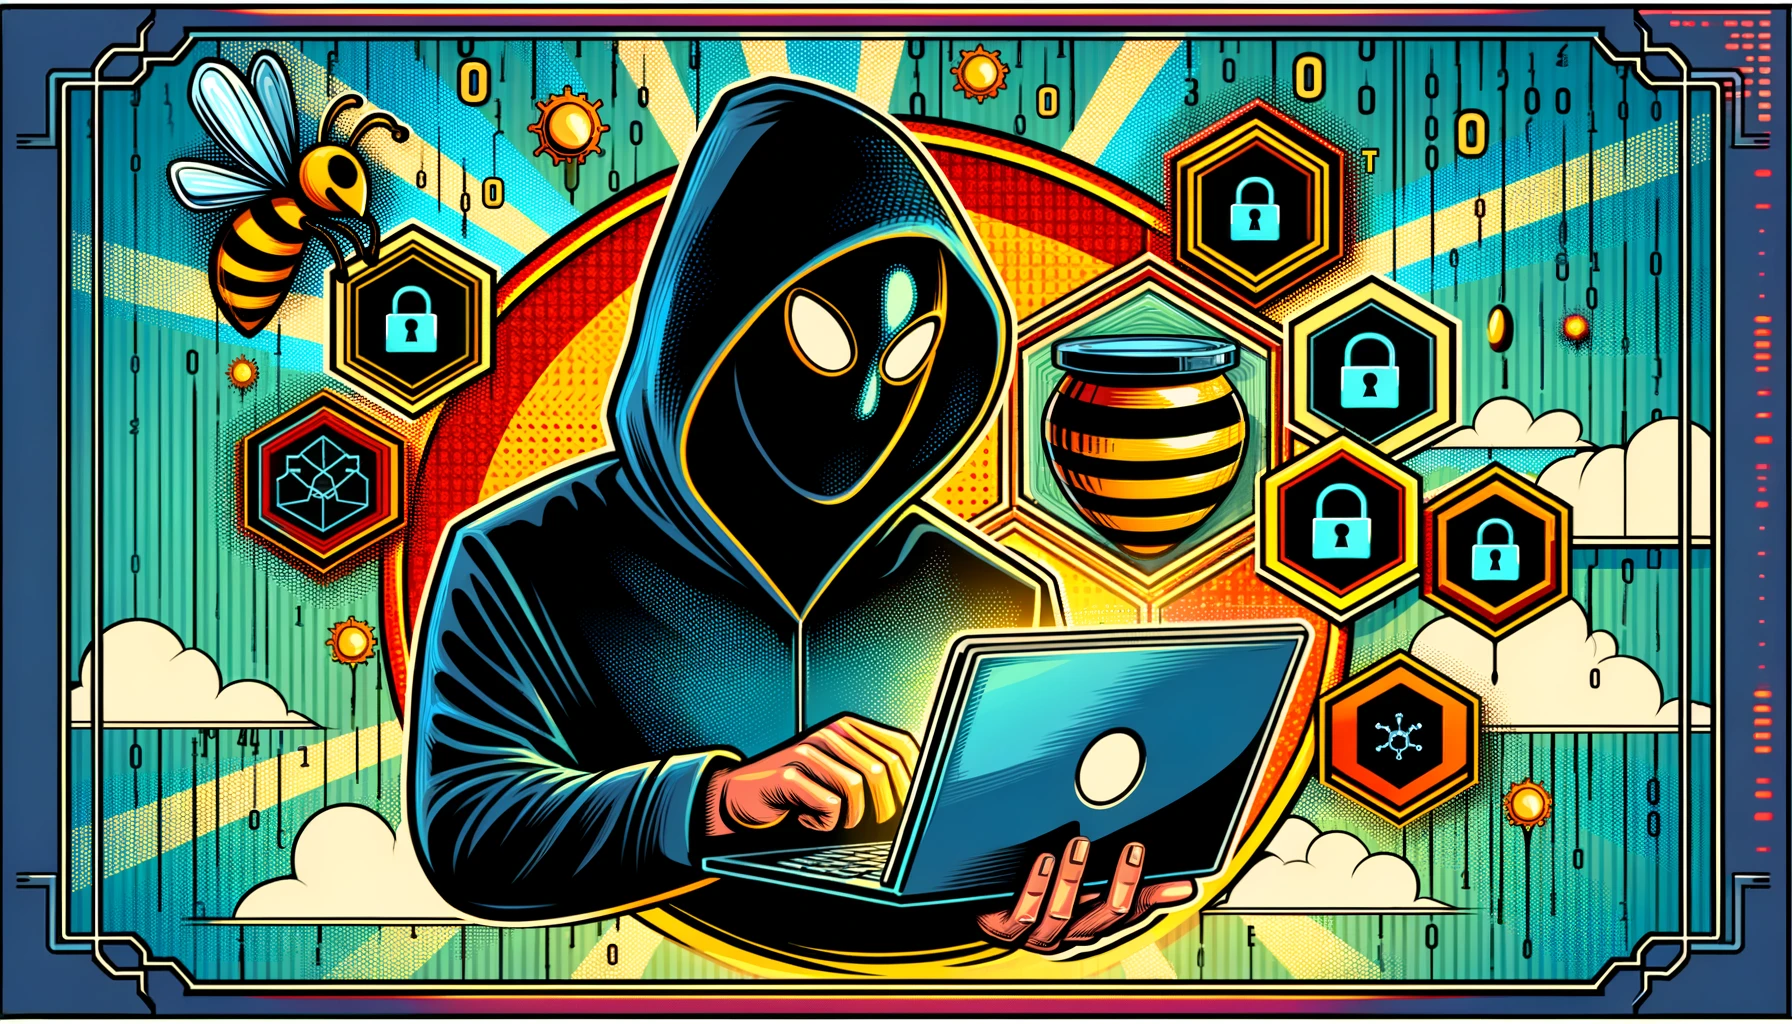 Comichafte Darstellung eines Hackers, der in einen Honeypot gerät.